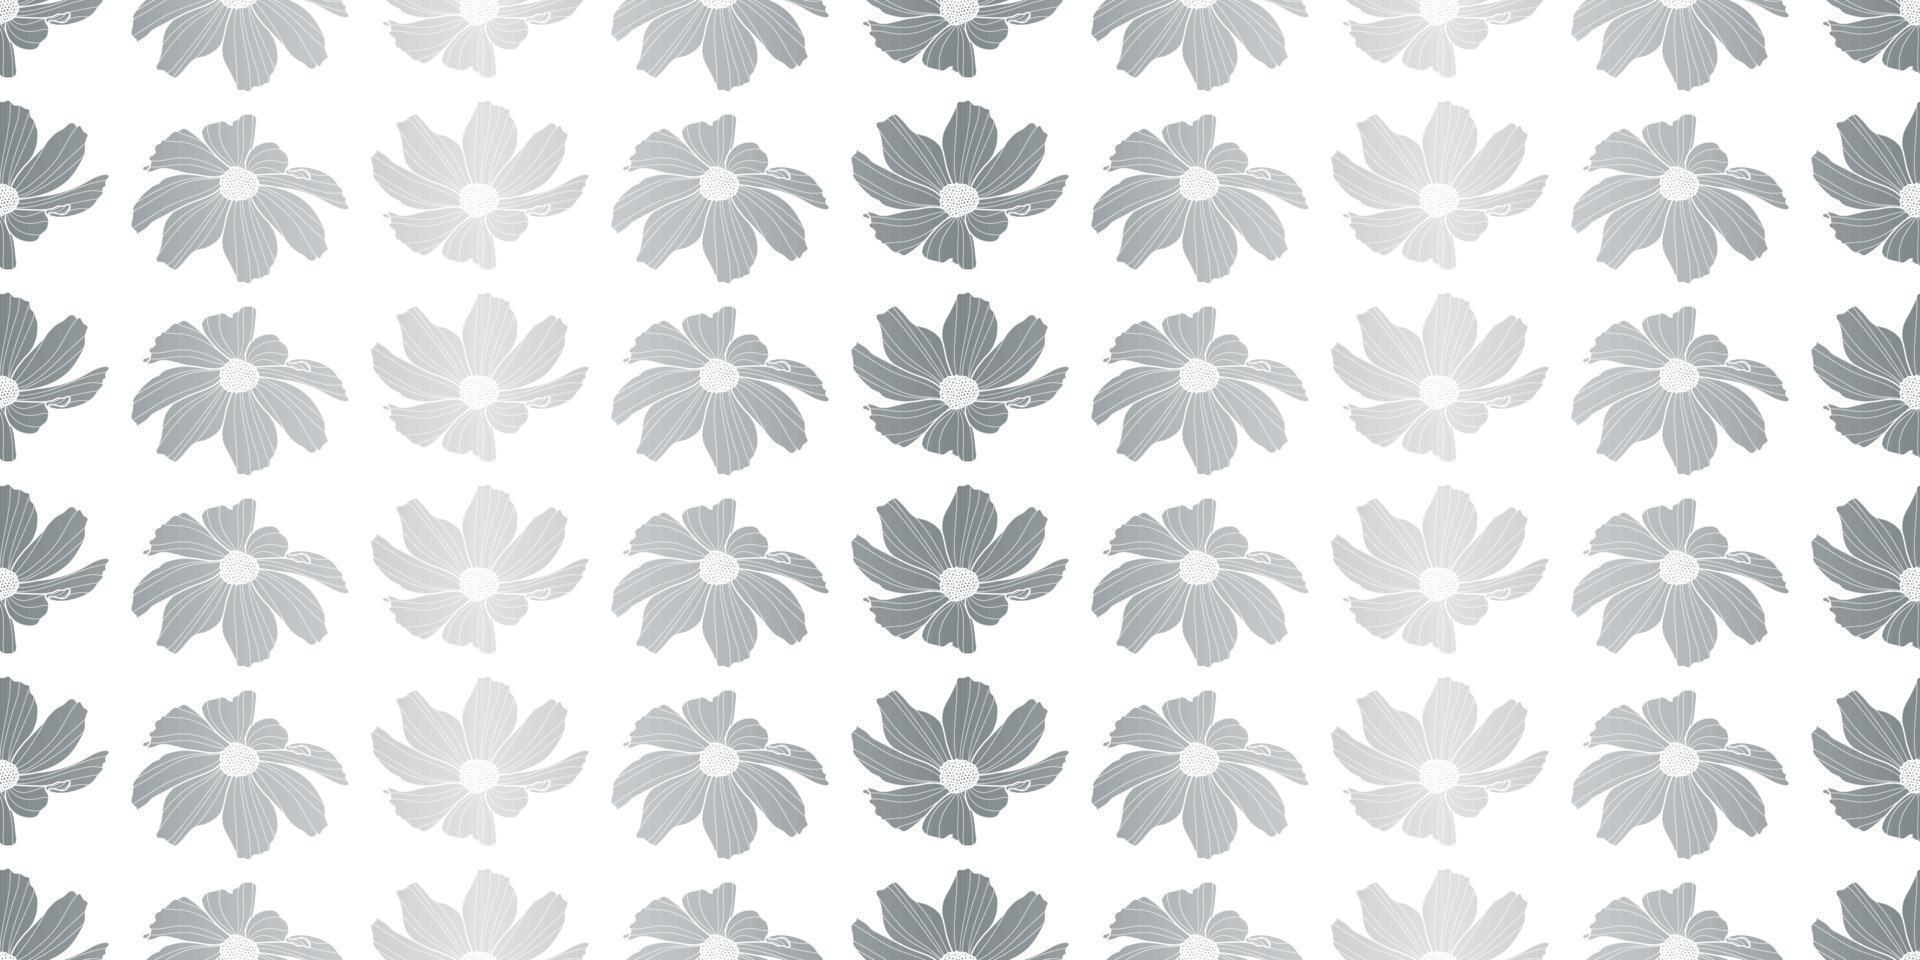 Garden cosmos flower vector pattern background, floral design